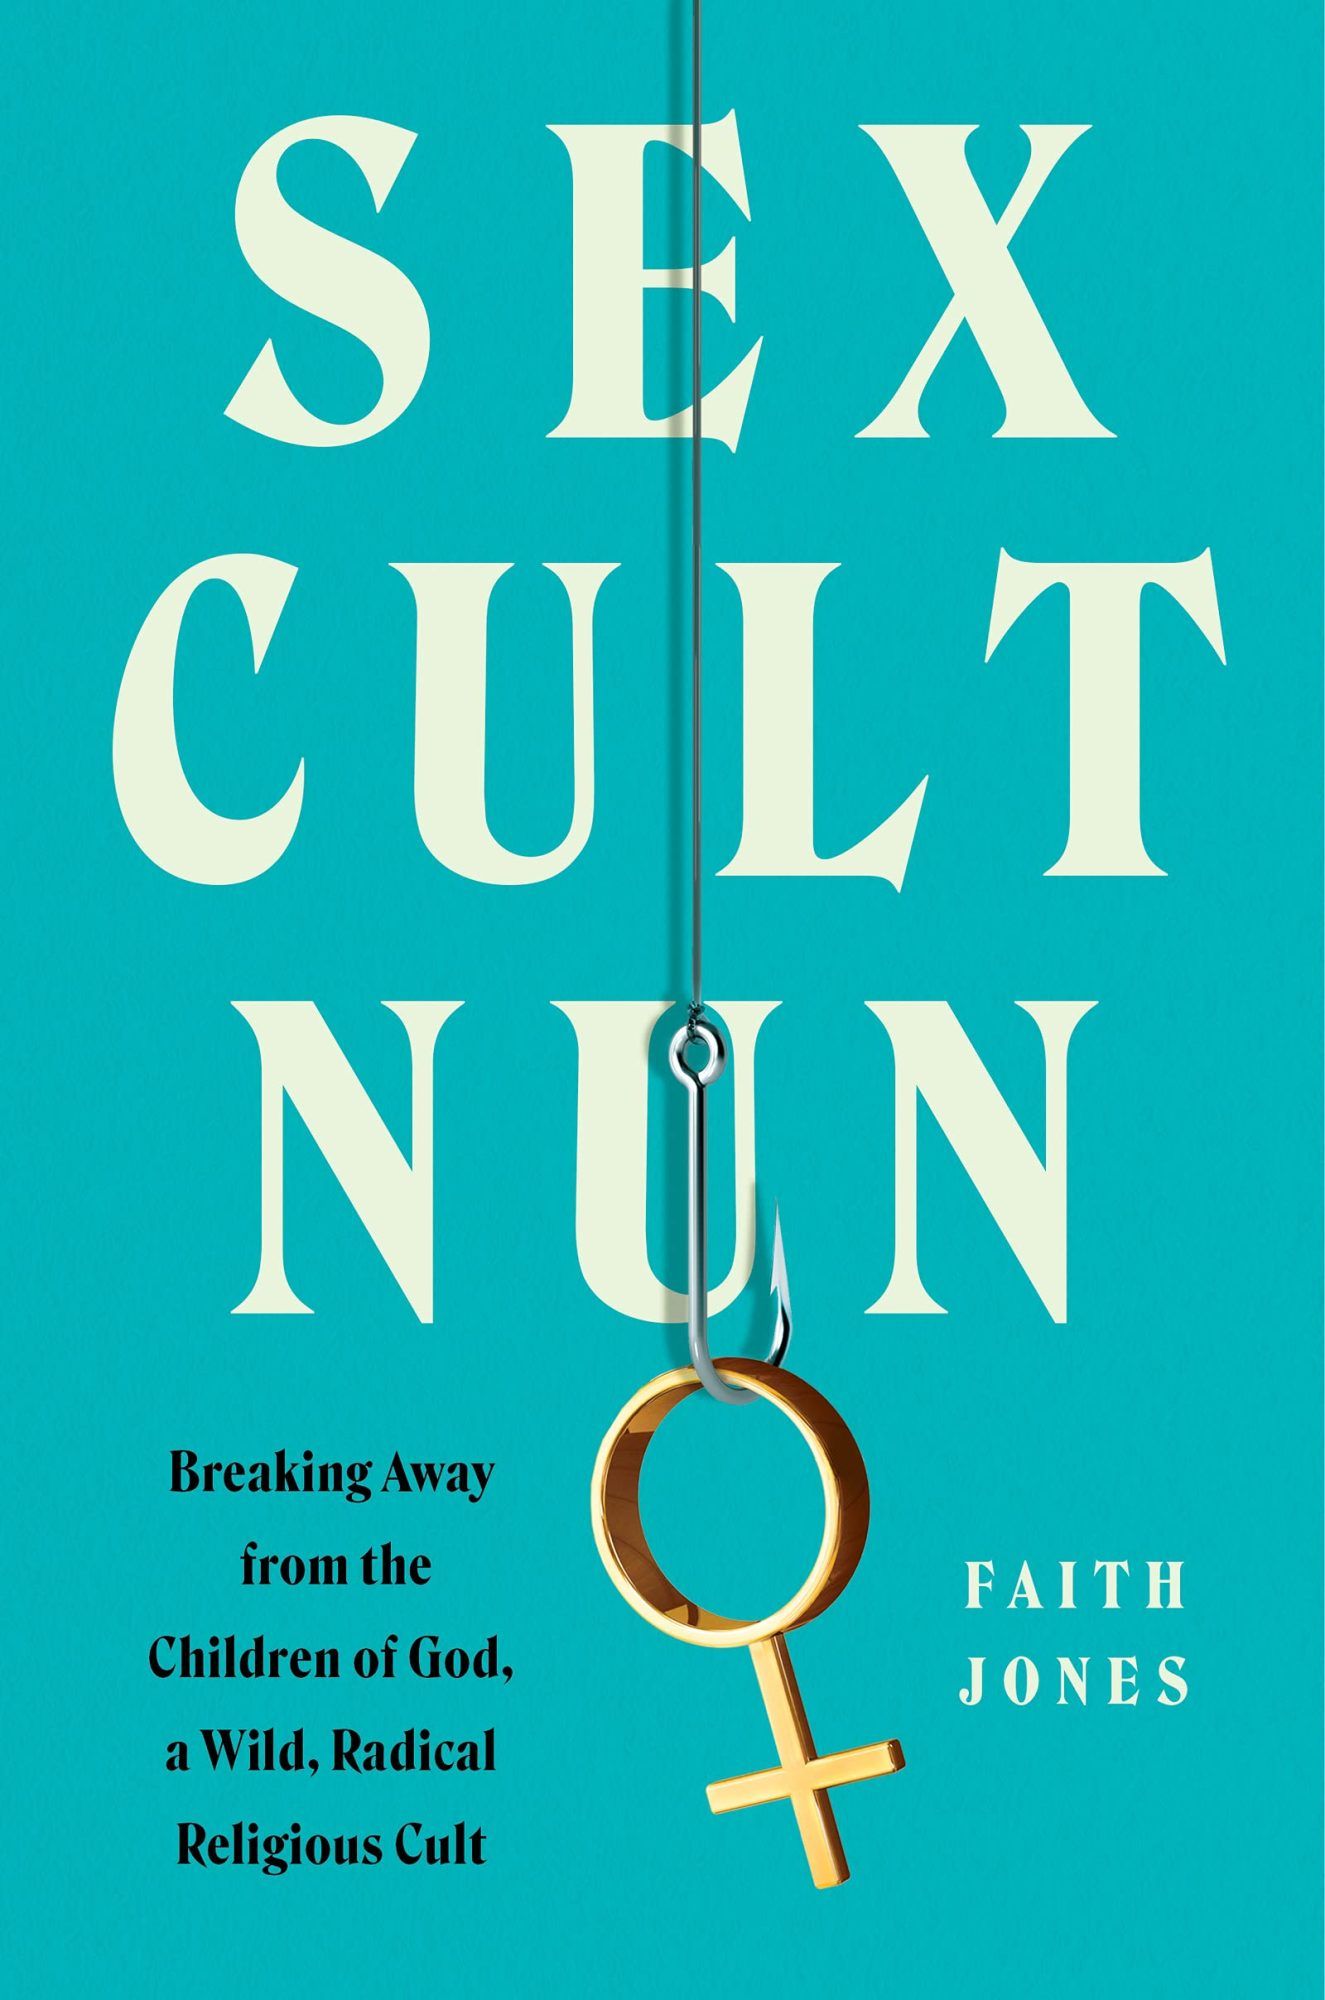 Ֆեյթ Ջոնսի «Sex Cult Nun» գրքի շապիկը